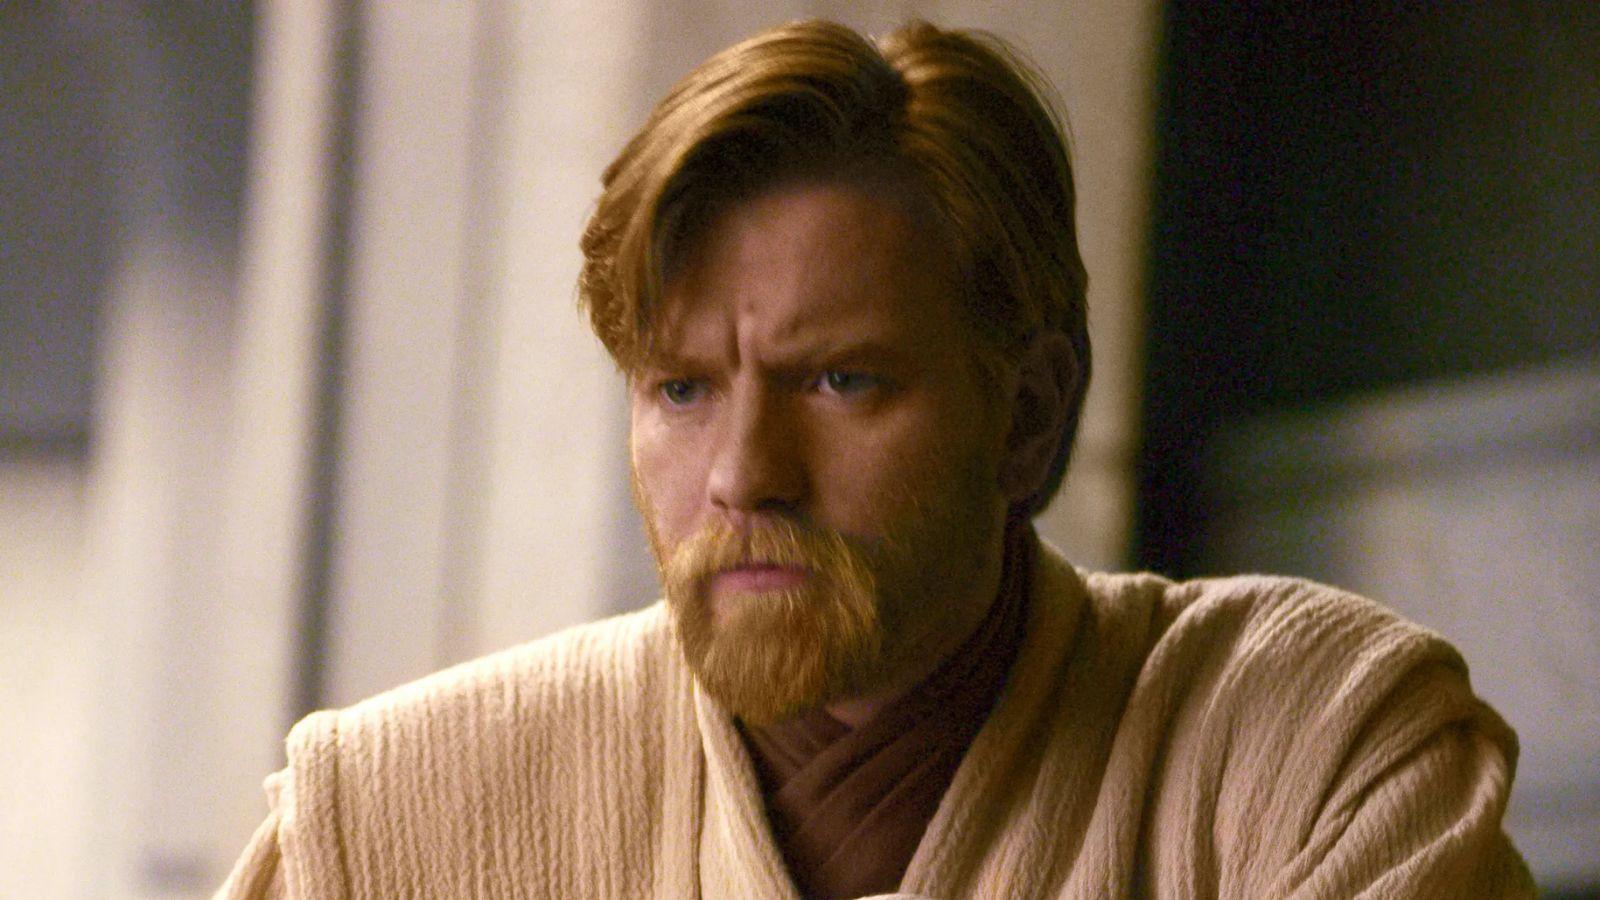 Ewan McGregor as Obi-Wan Kenobi in Revenge of the Sith.